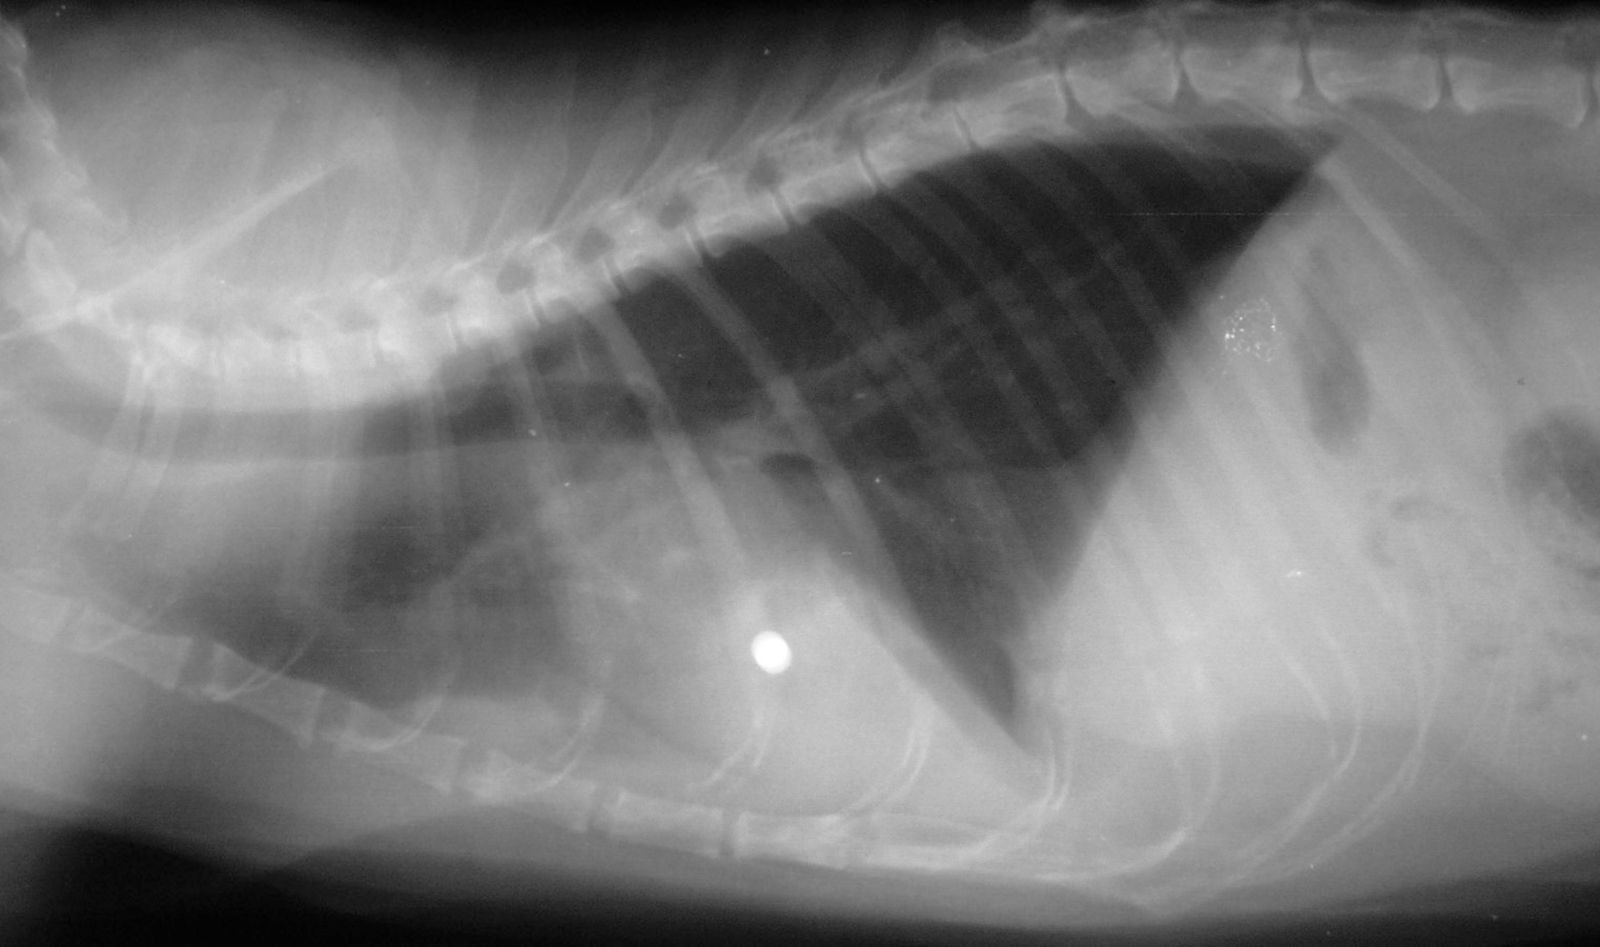 Radiografie in proiezione laterale che mostrano un pallettone di piombo nel miocardio di un gatto.